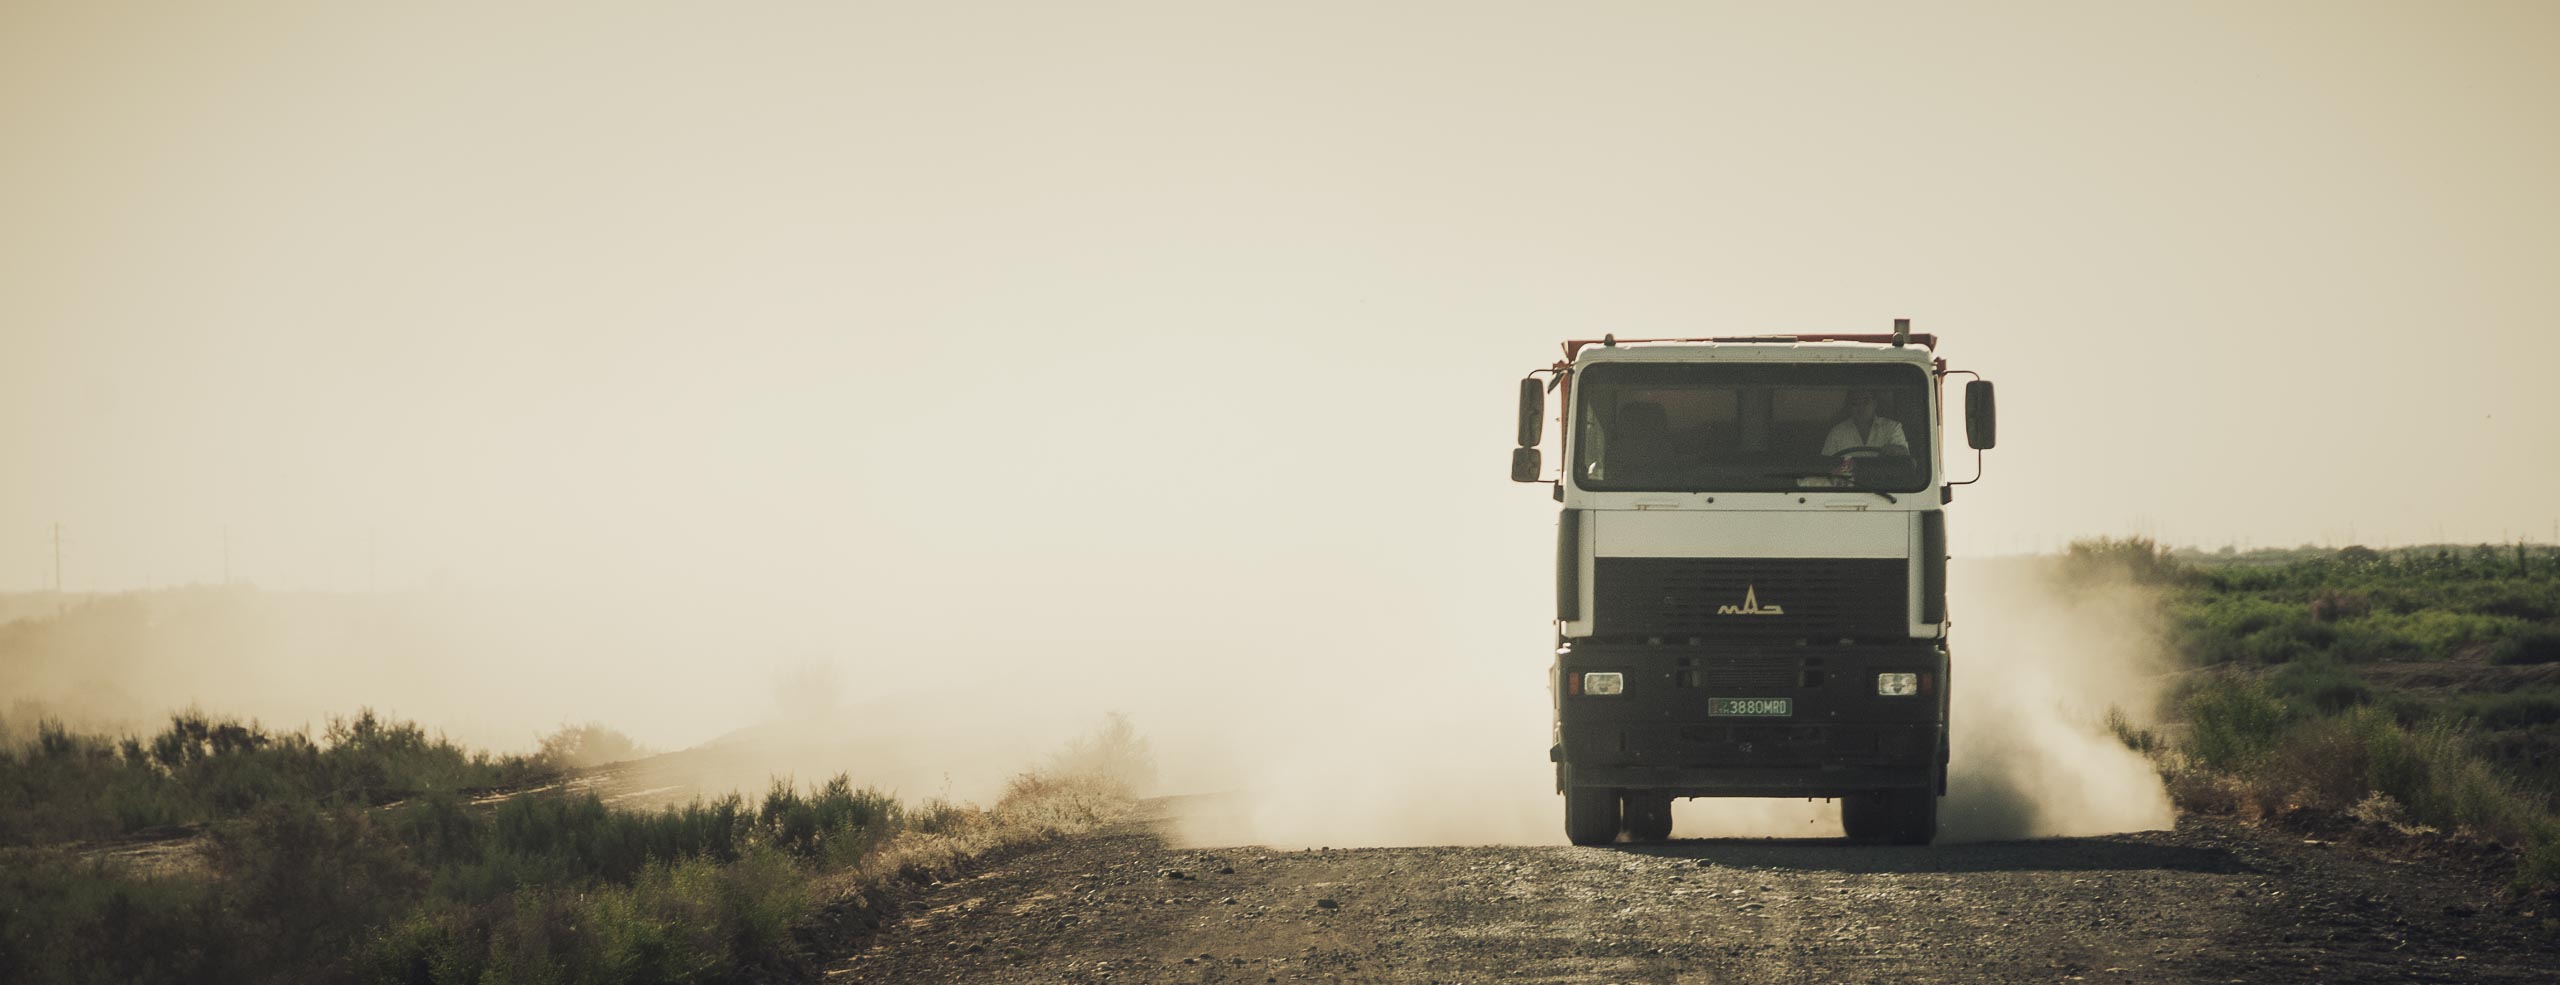 Camion sur une route poussiéreuse du Turkménistan en Asie Centrale, l’atmosphère semble couverte de poussière - Un voyage à vélo à travers l'Asie